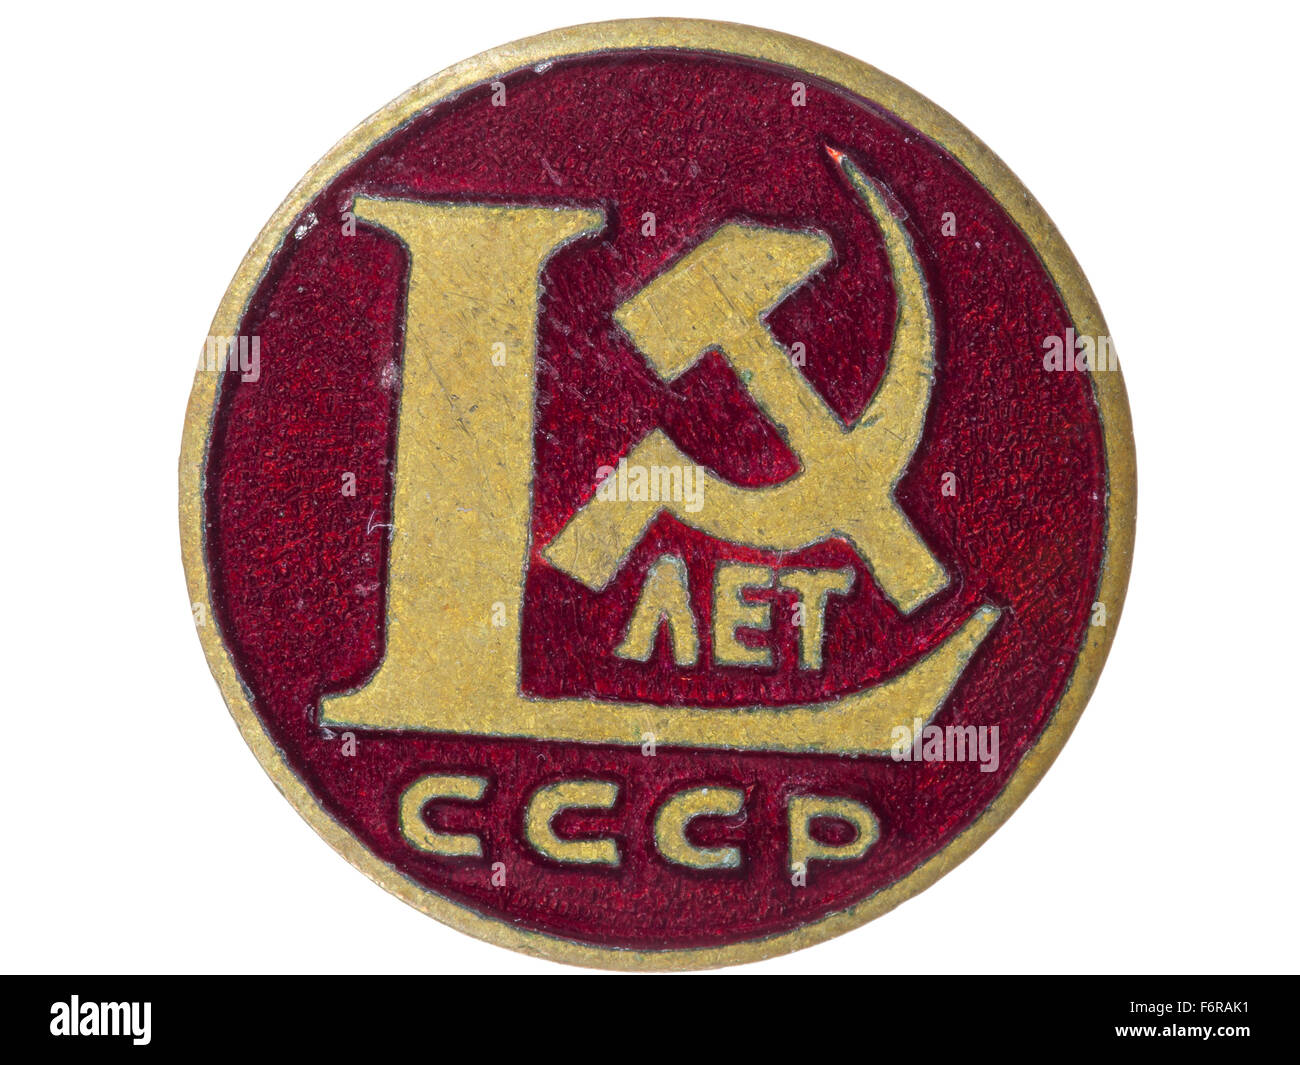 Insigne soviétique vintage dédié aux 60 ans de l'URSS Badge à épingler à  collectionner Fabriqué en URSS en 1982 -  France